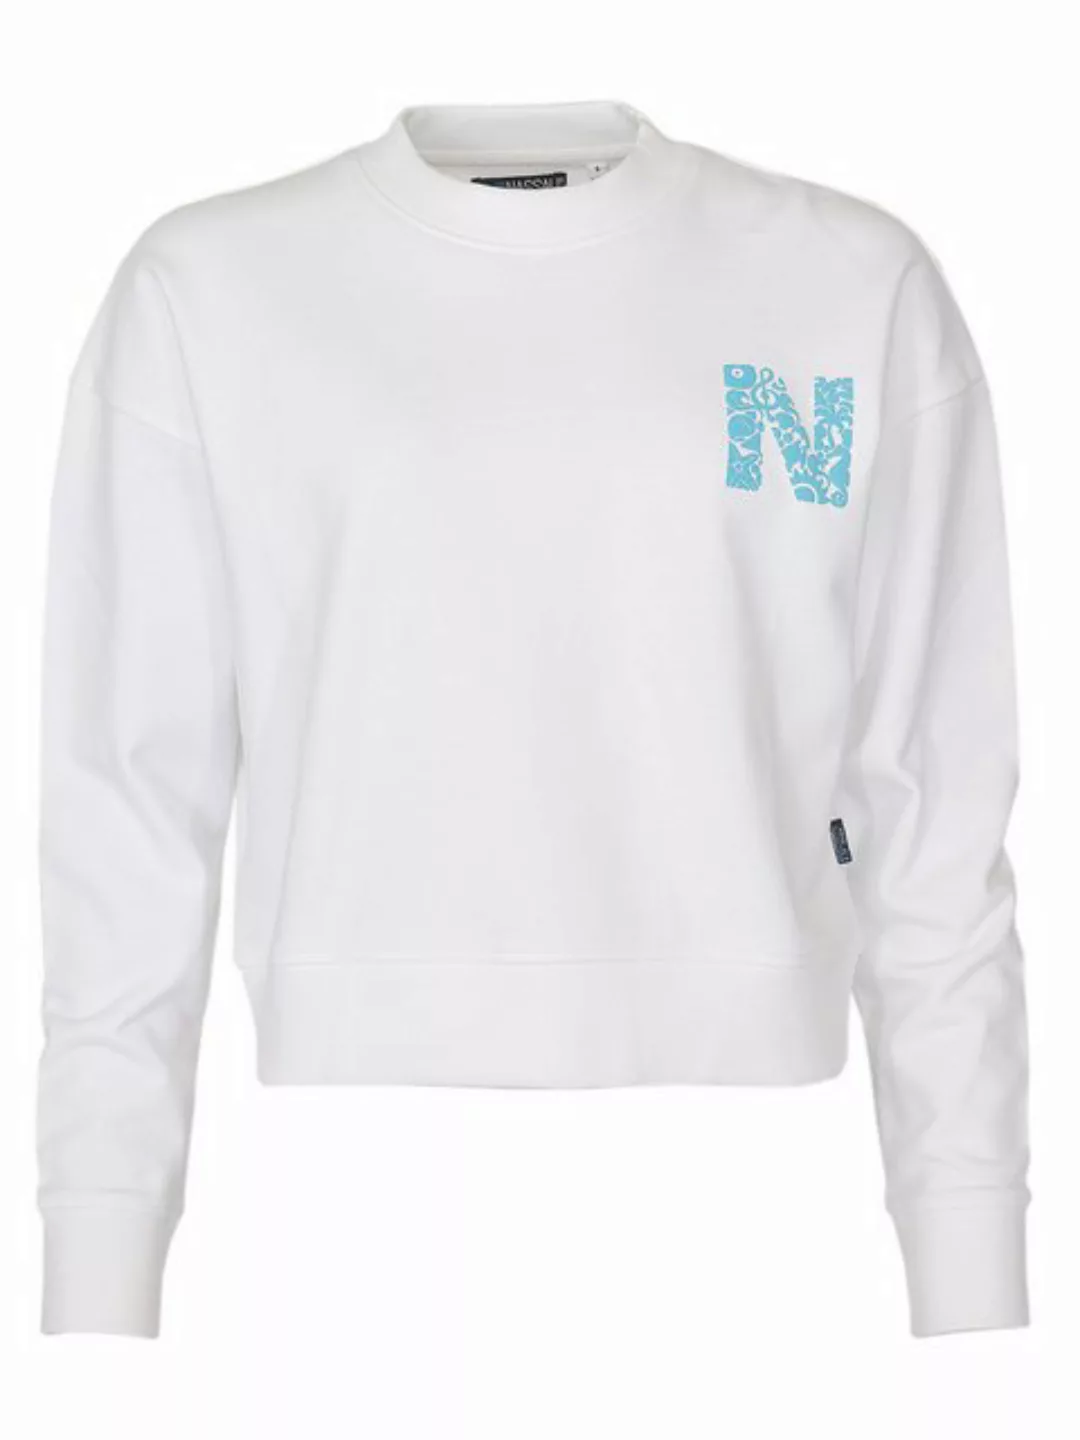 NASSAU BEACH Sweater NB231036 günstig online kaufen